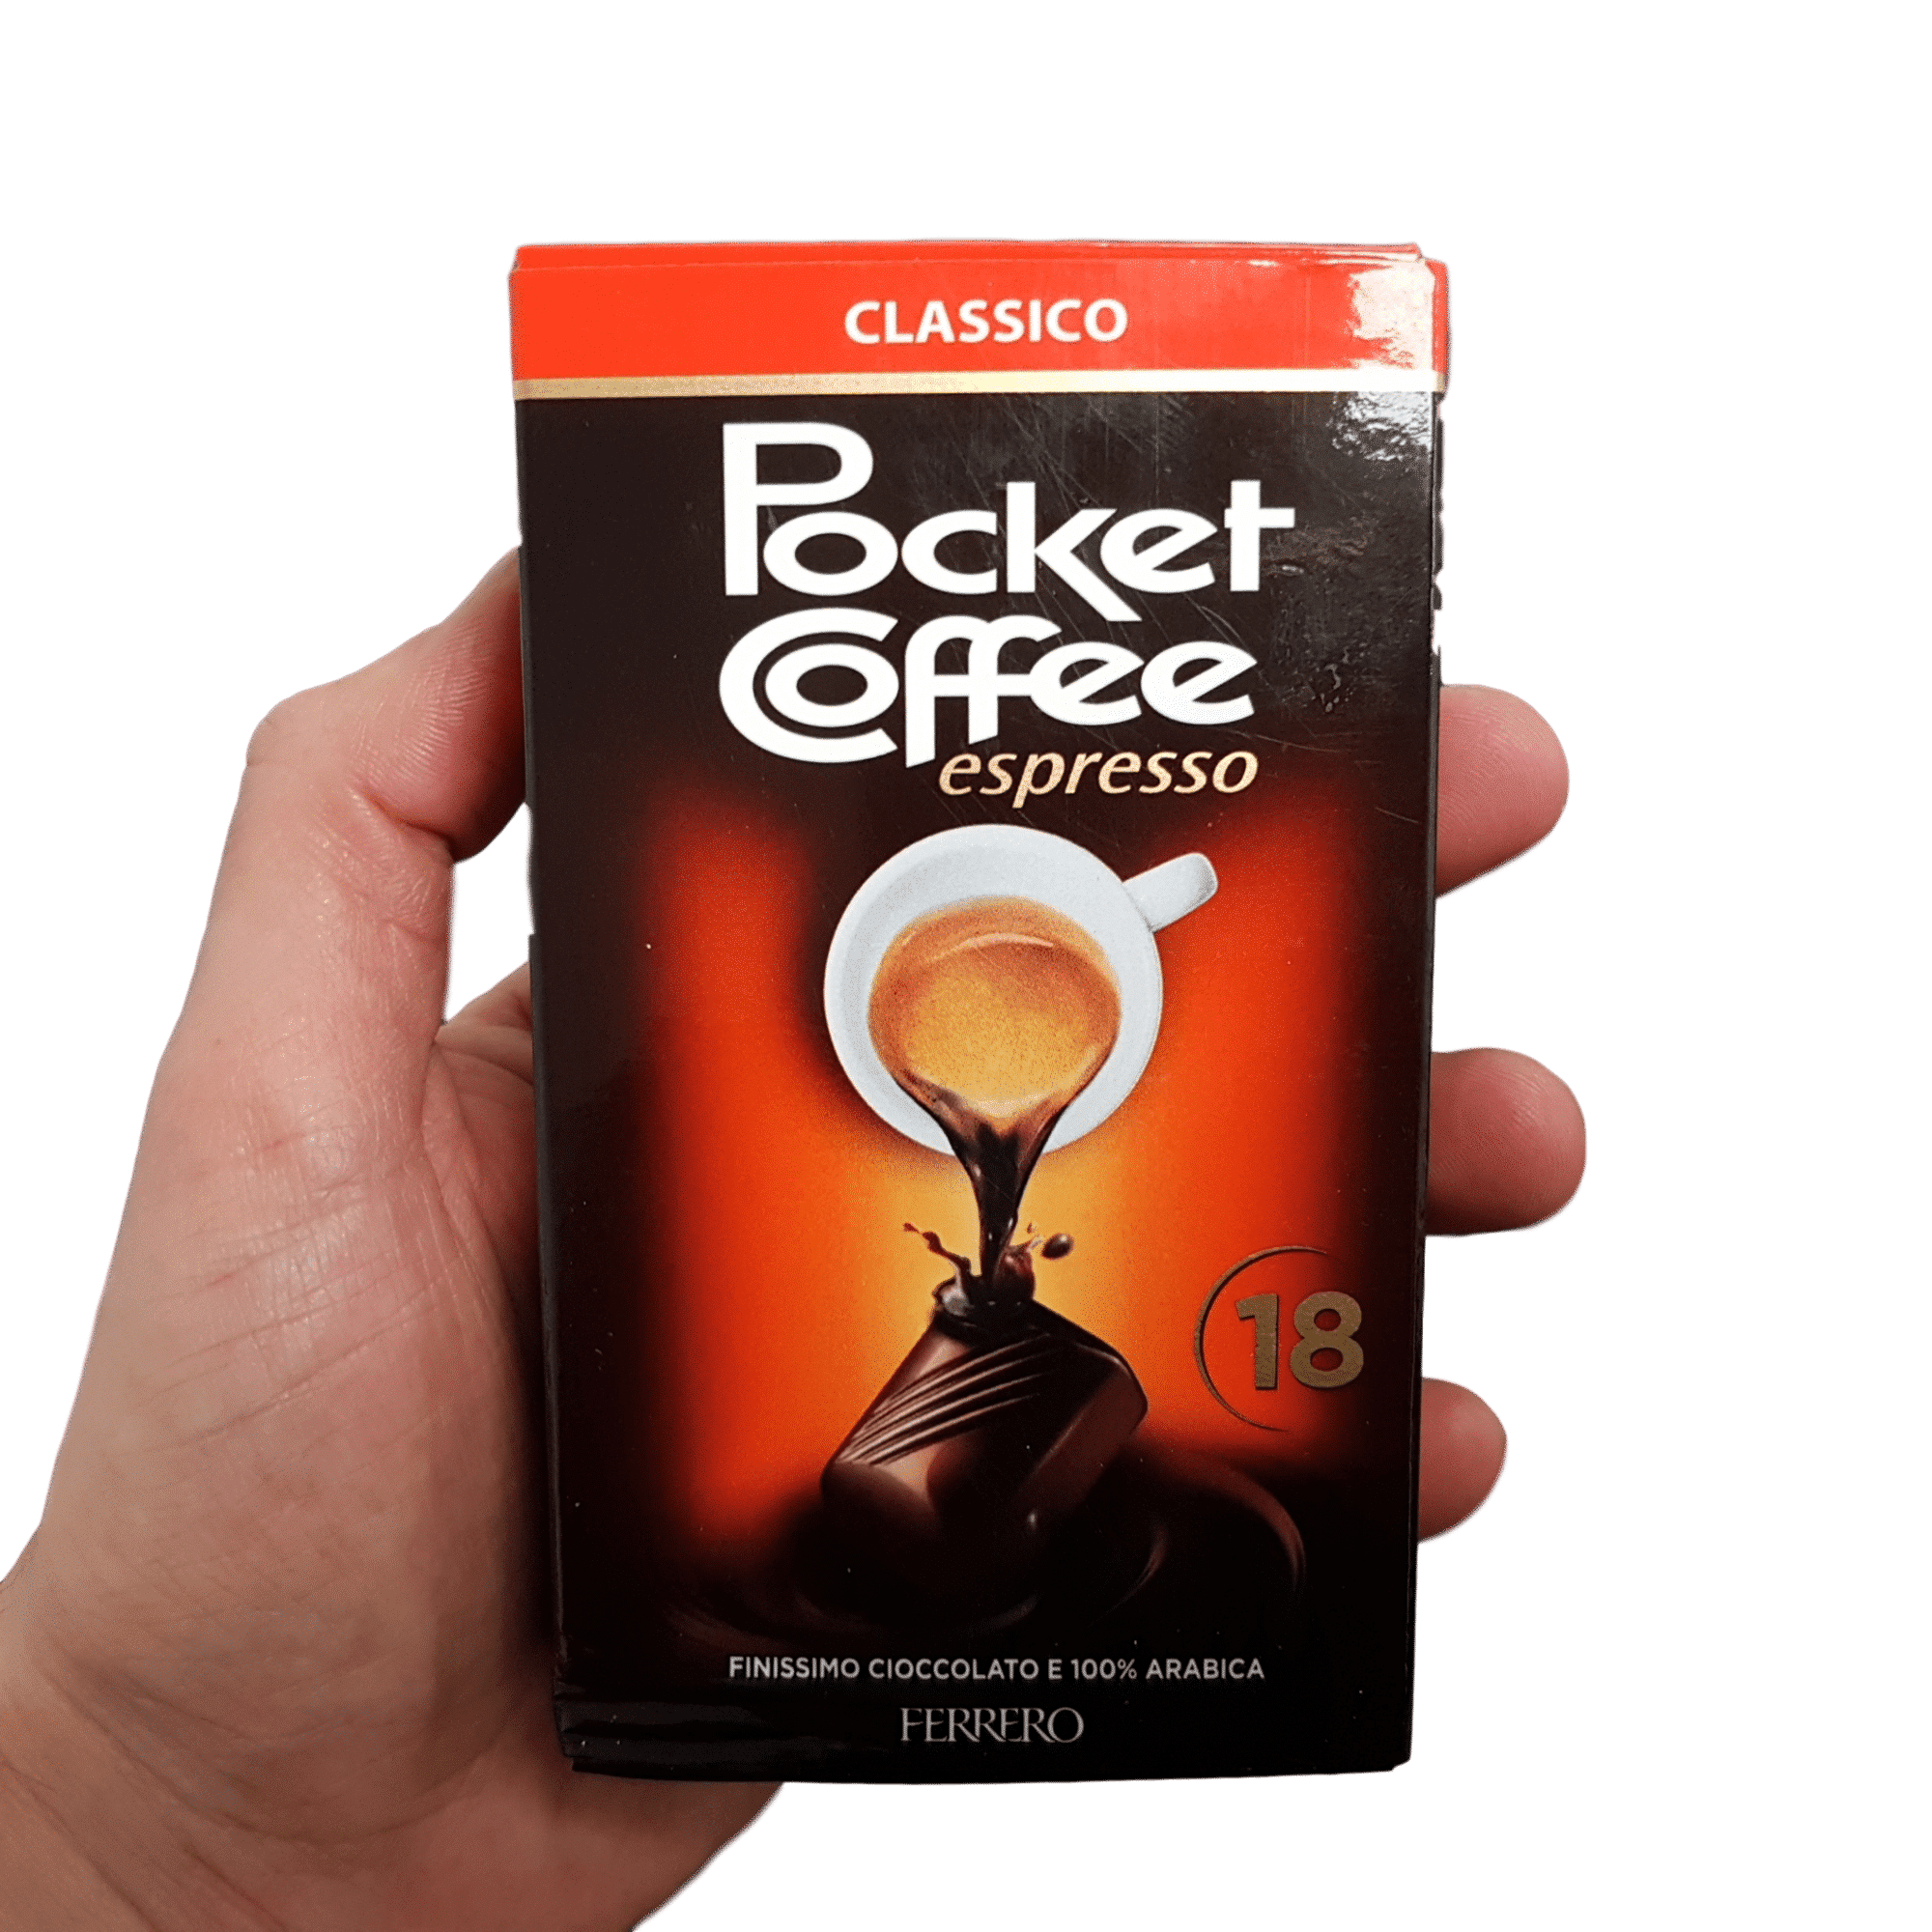 Pocket Coffee espresso to go T3x15 Ferrero